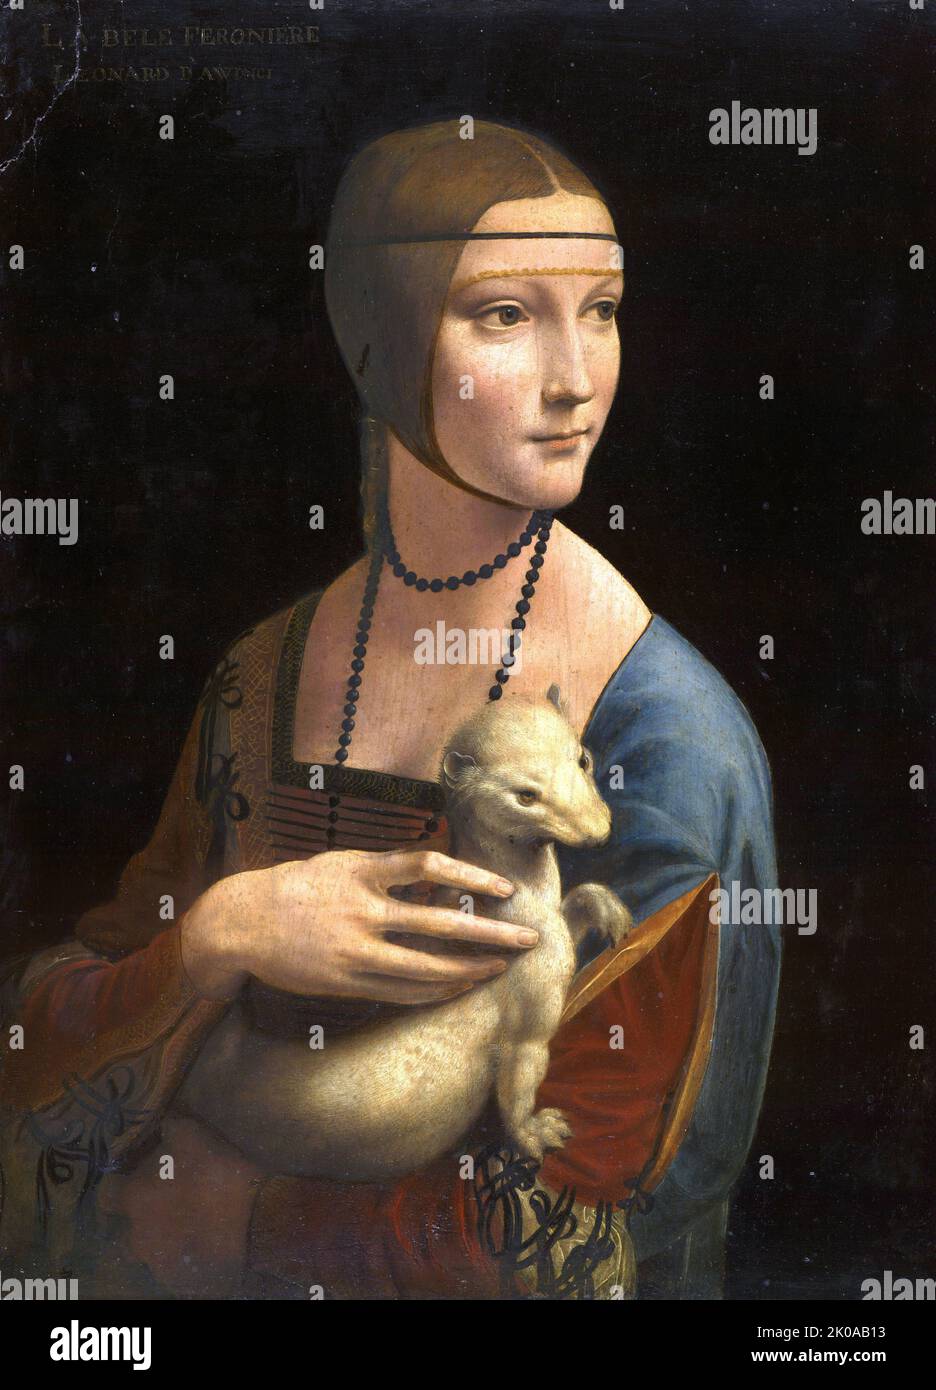 Die Dame mit einem Ermin; ein Porträtgemälde, das dem italienischen Renaissance-Künstler Leonardo da Vinci zugeschrieben wird. Datiert auf ca. 1489-1491, ist das Werk in Öl auf einer Platte aus Walnussholz gemalt. Das Thema ist Cecilia Gallerani, eine Geliebte von Ludovico Sforza, Herzog von Mailand Stockfoto